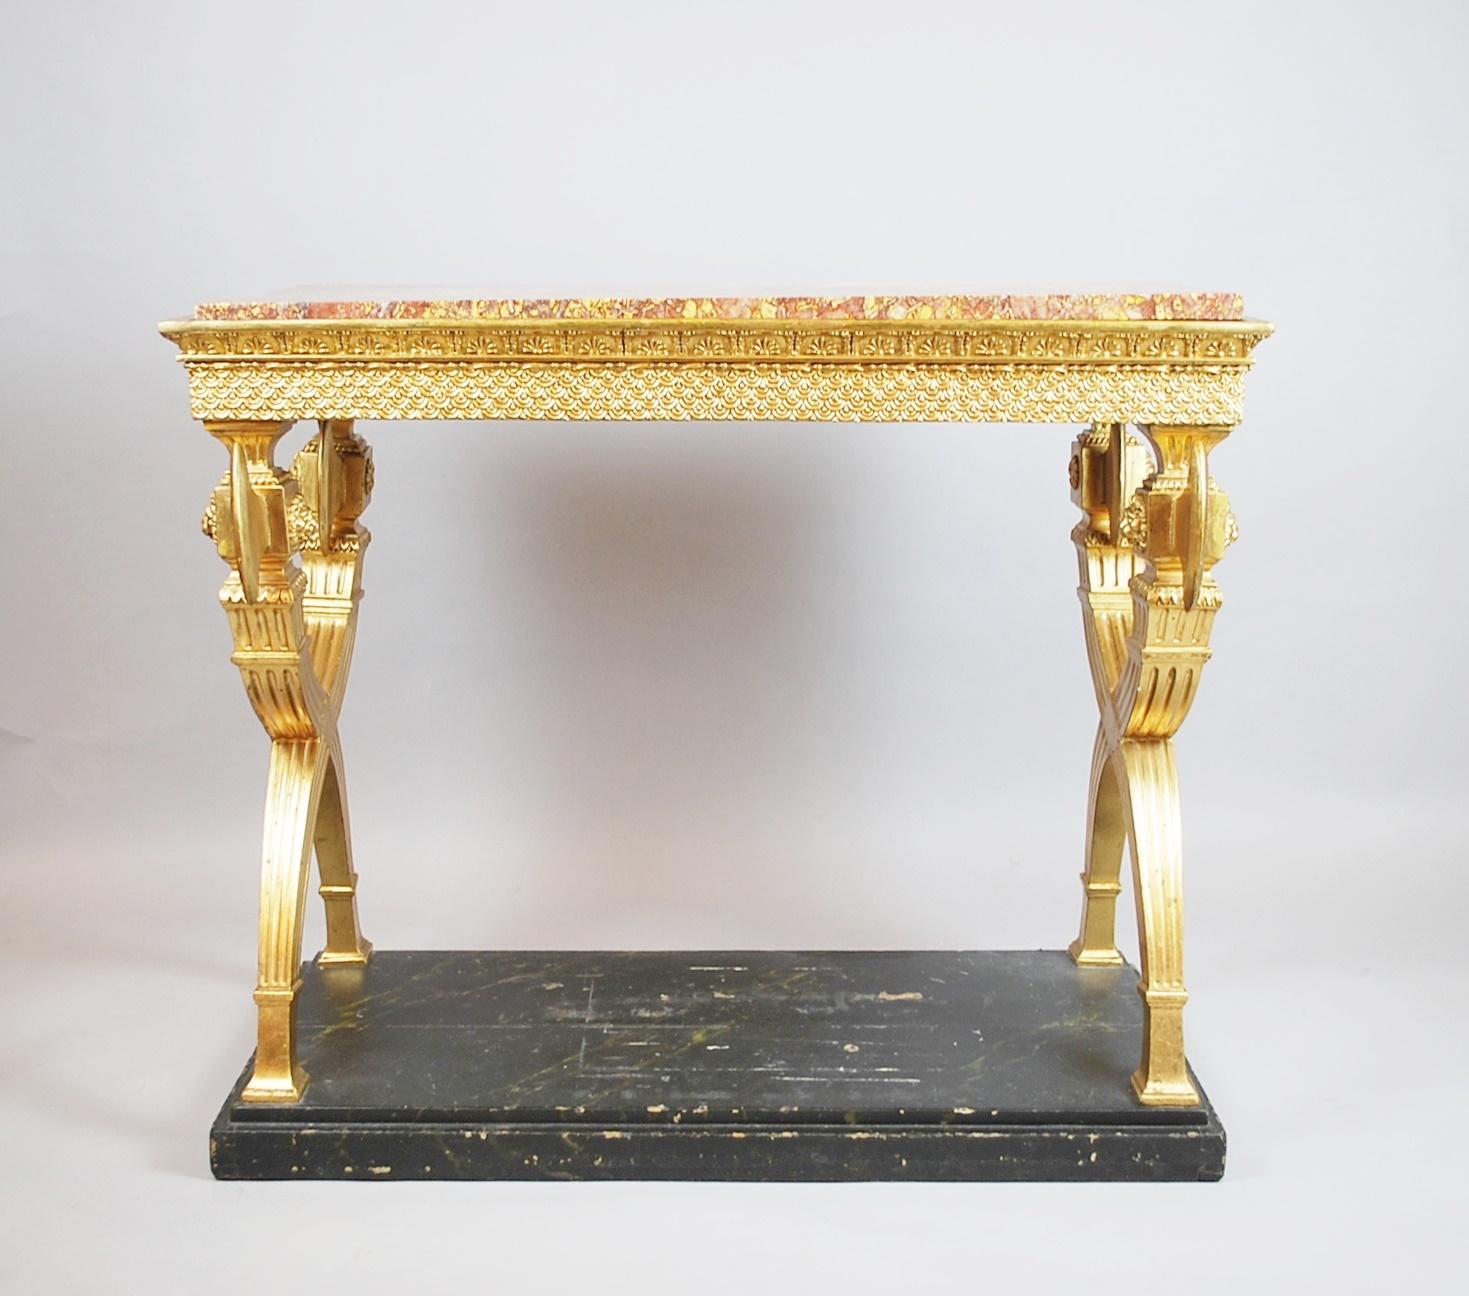 Consolein bois doré, marbre, 19ème siècle Suède. (vers 1800).

 